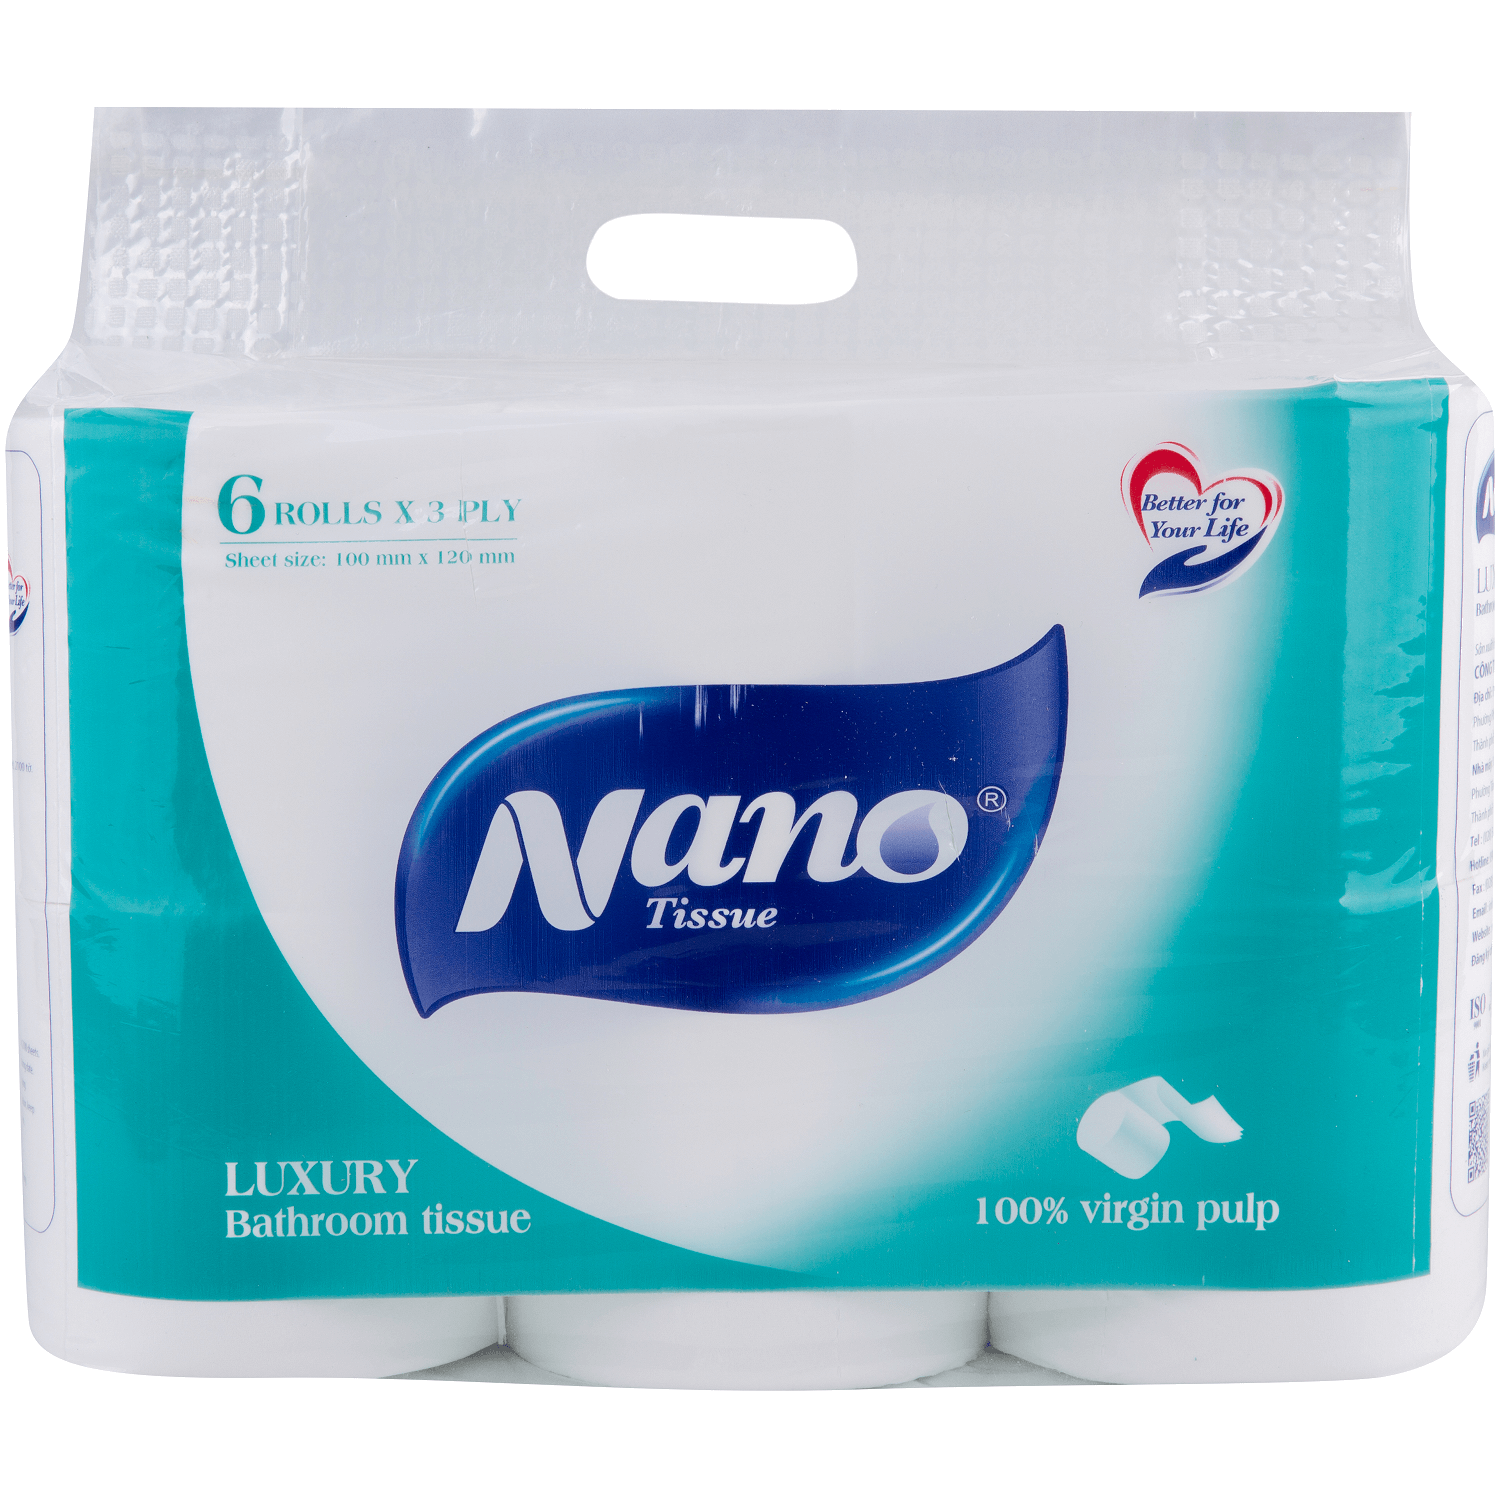 Combo 2 lốc giấy vệ sinh Luxury, lốc 6 cuộn thương hiệu Nano, có lõi và không lõi, giấy mịn, an toàn khi sử dụng